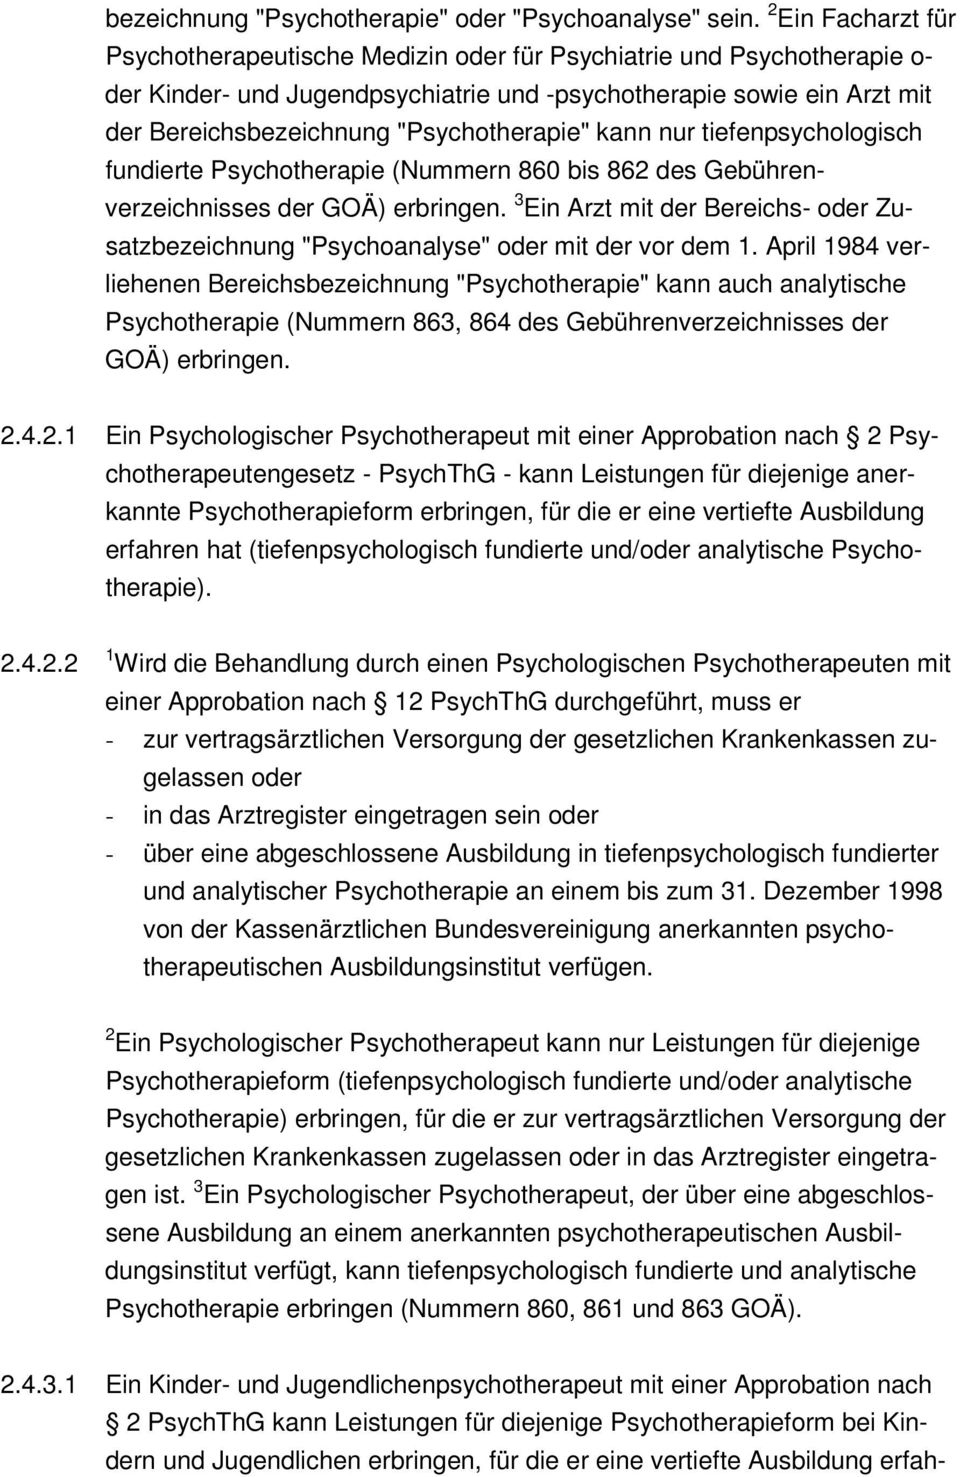 "Psychotherapie" kann nur tiefenpsychologisch fundierte Psychotherapie (Nummern 860 bis 862 des Gebührenverzeichnisses der GOÄ) erbringen.